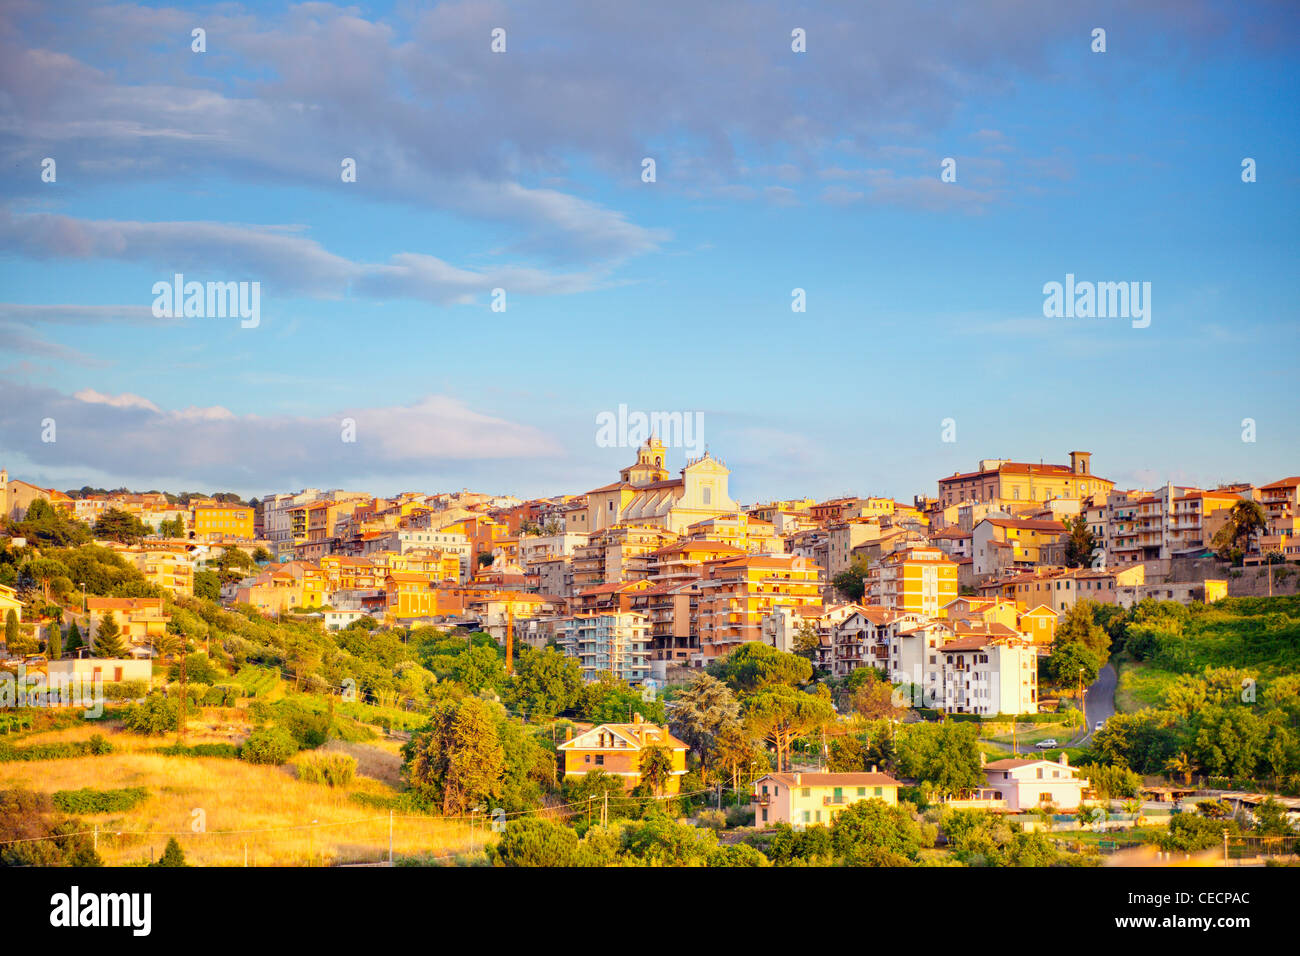 La ville de Saint-Marin, de Castelli Romani, Italie Banque D'Images